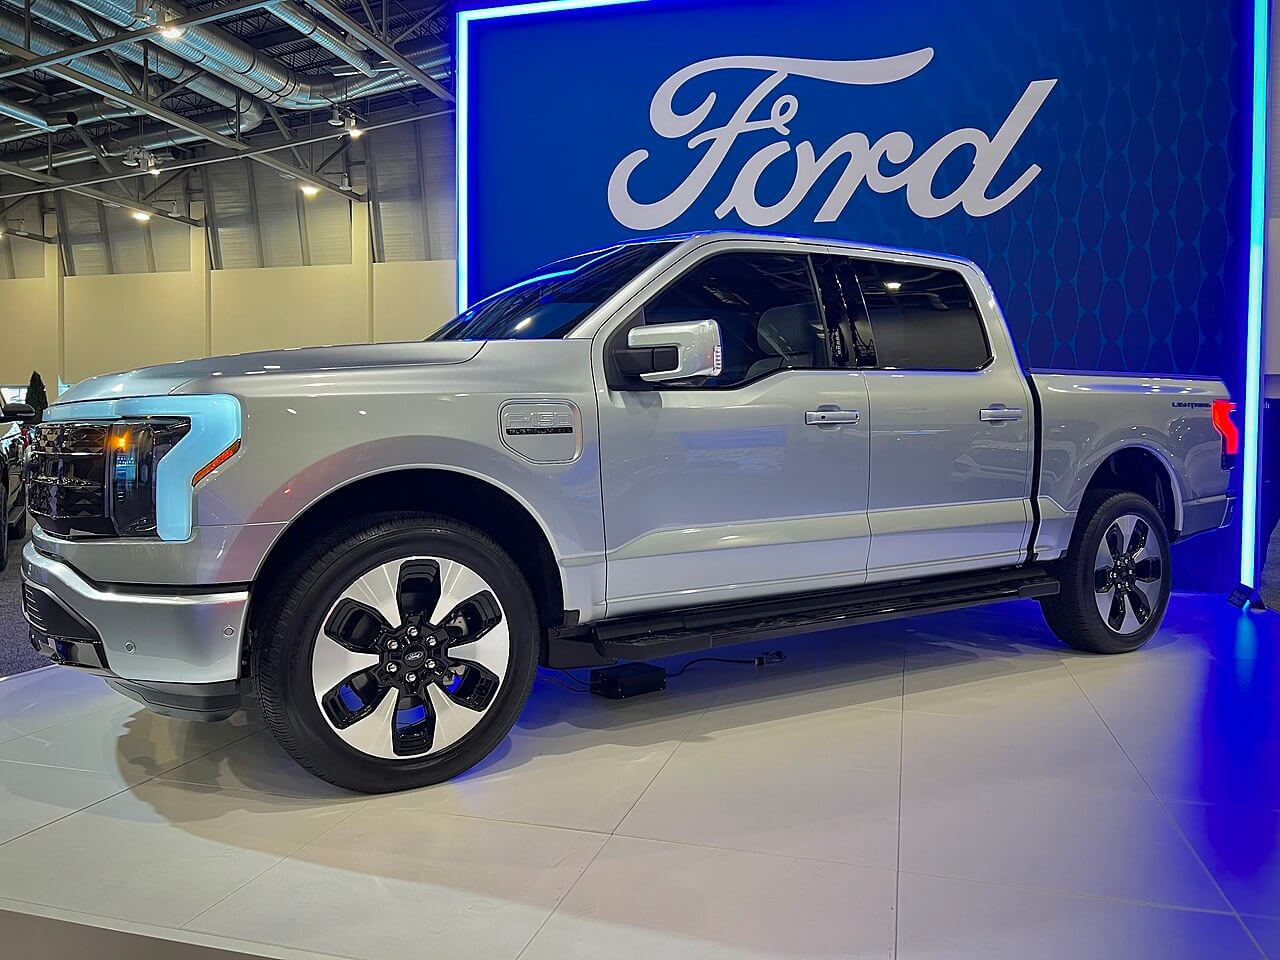 Ford удваивает стратегию создания электромобилей и рассчитывает продать завод в Германии